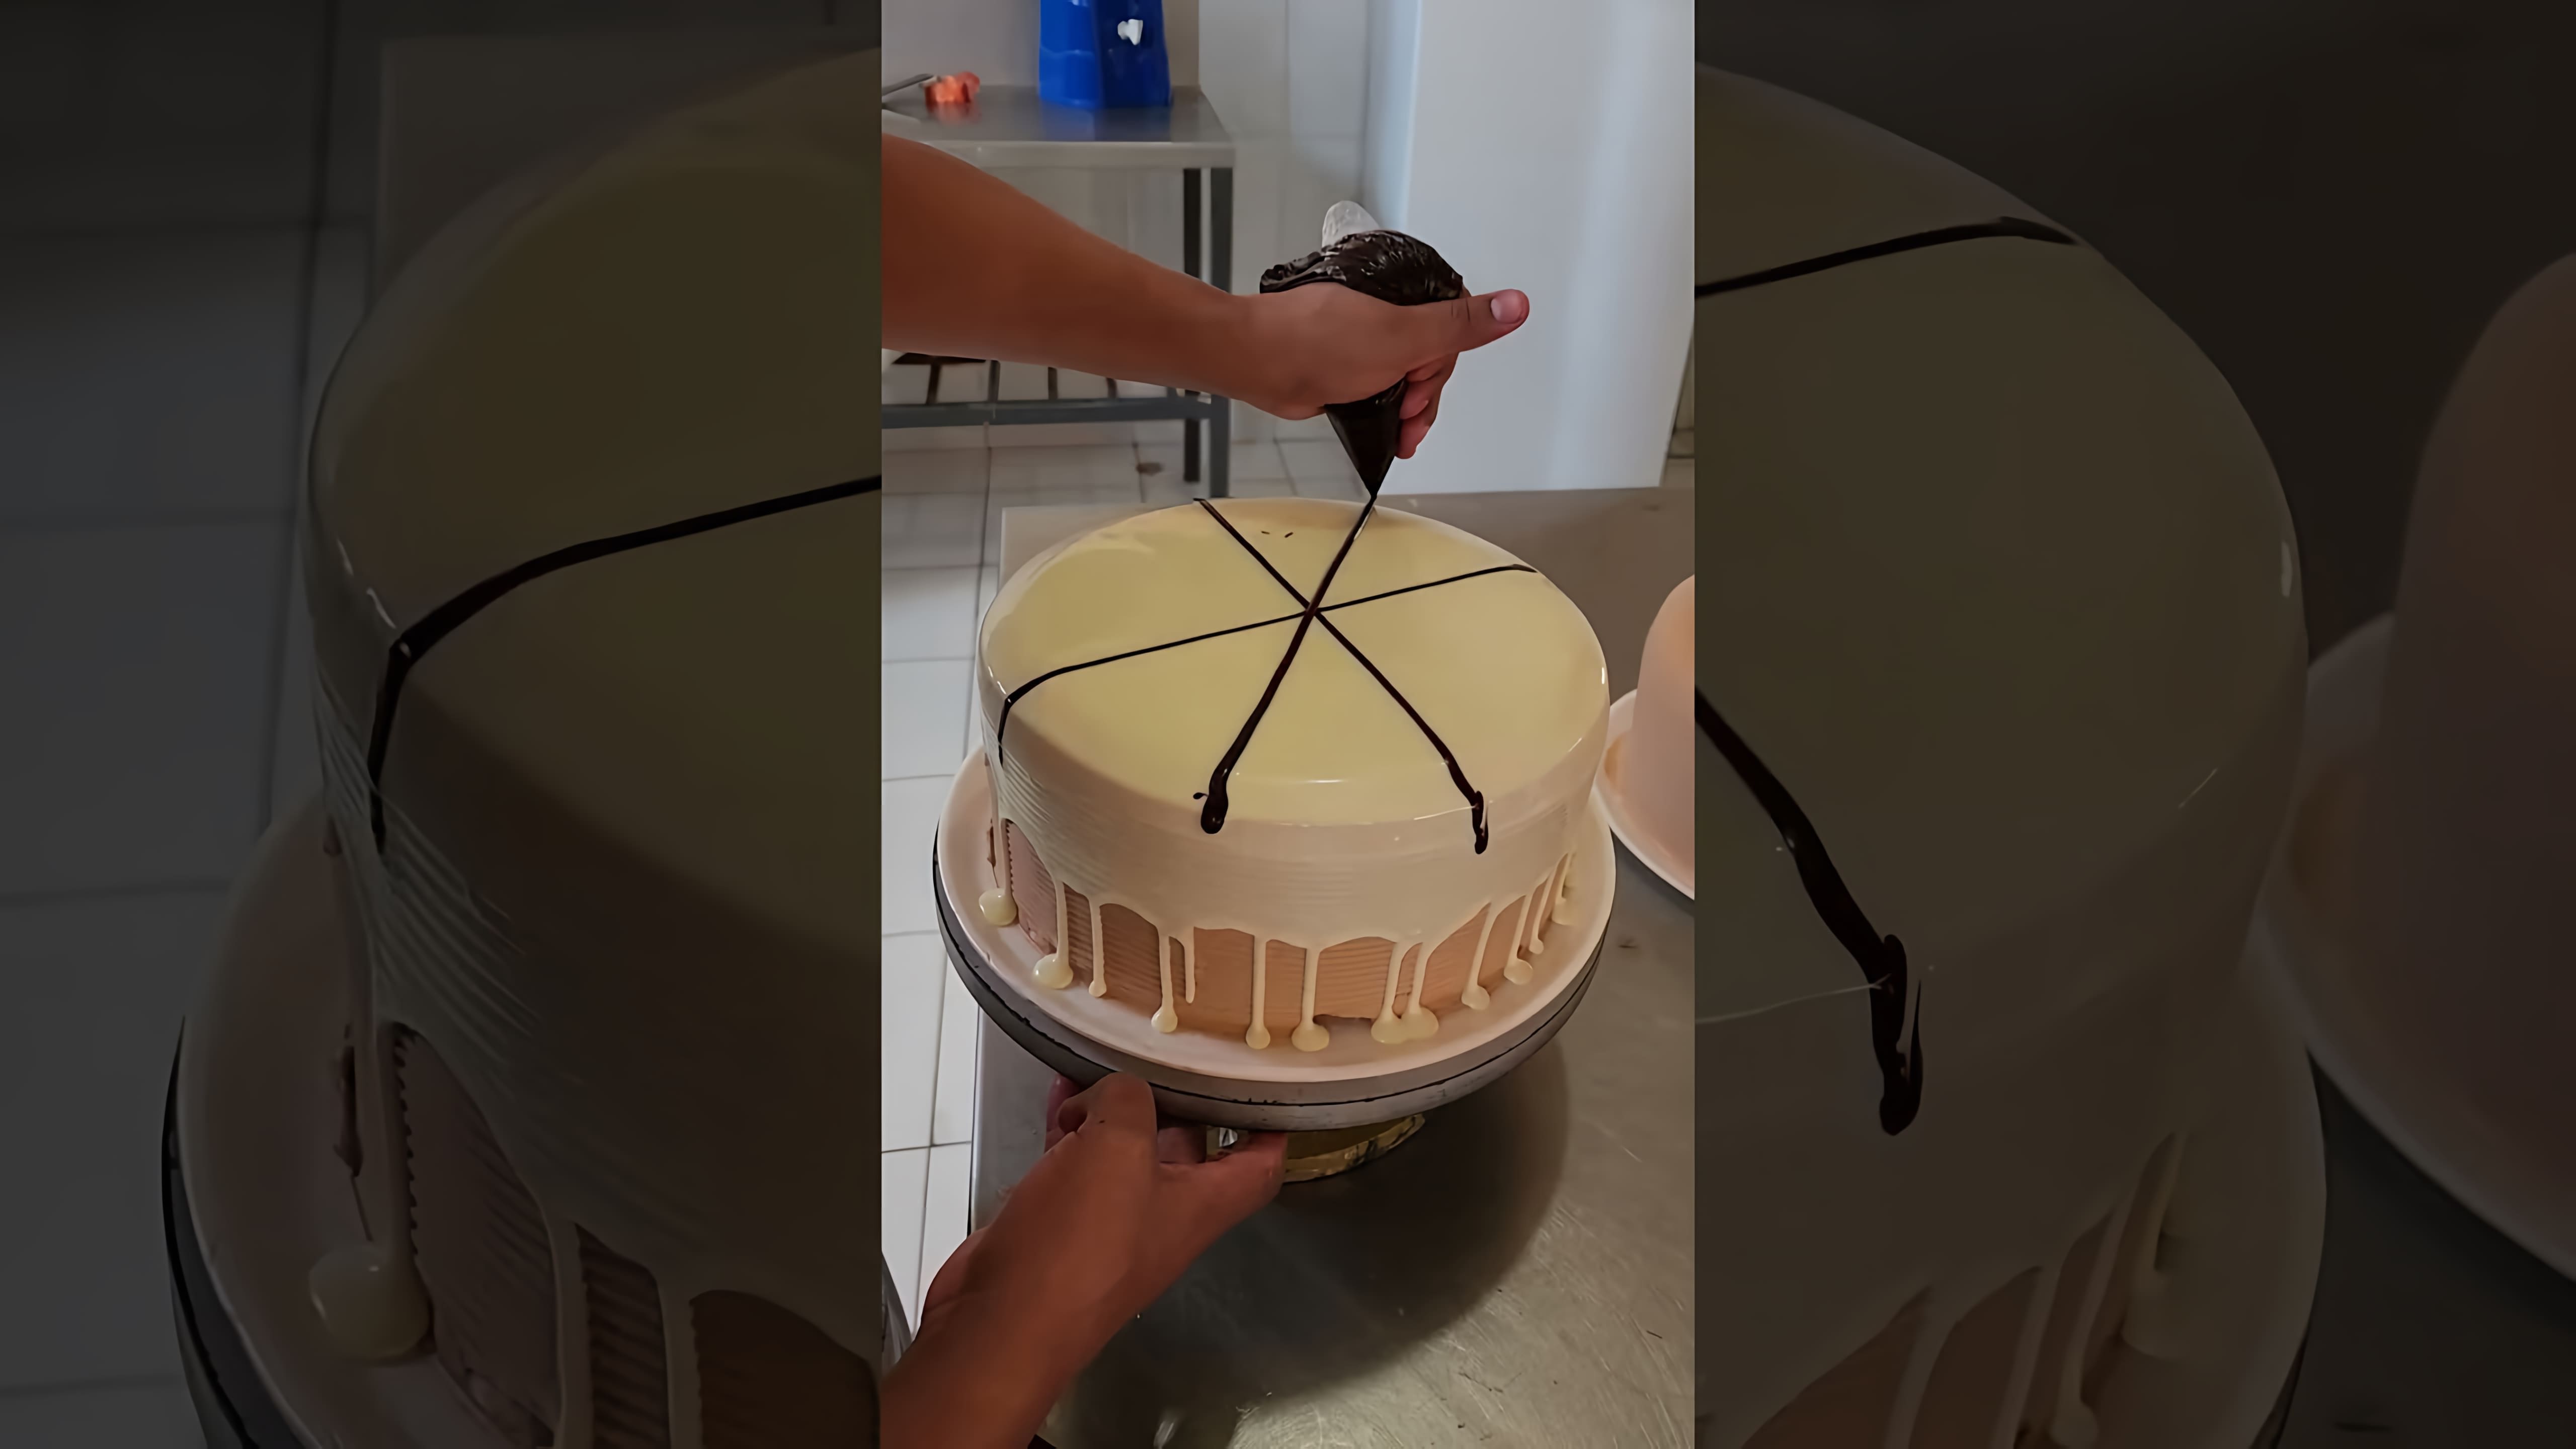 "Как украсить торт белым шоколадом" - это видео-ролик, который показывает, как создать красивый и вкусный торт с использованием белого шоколада